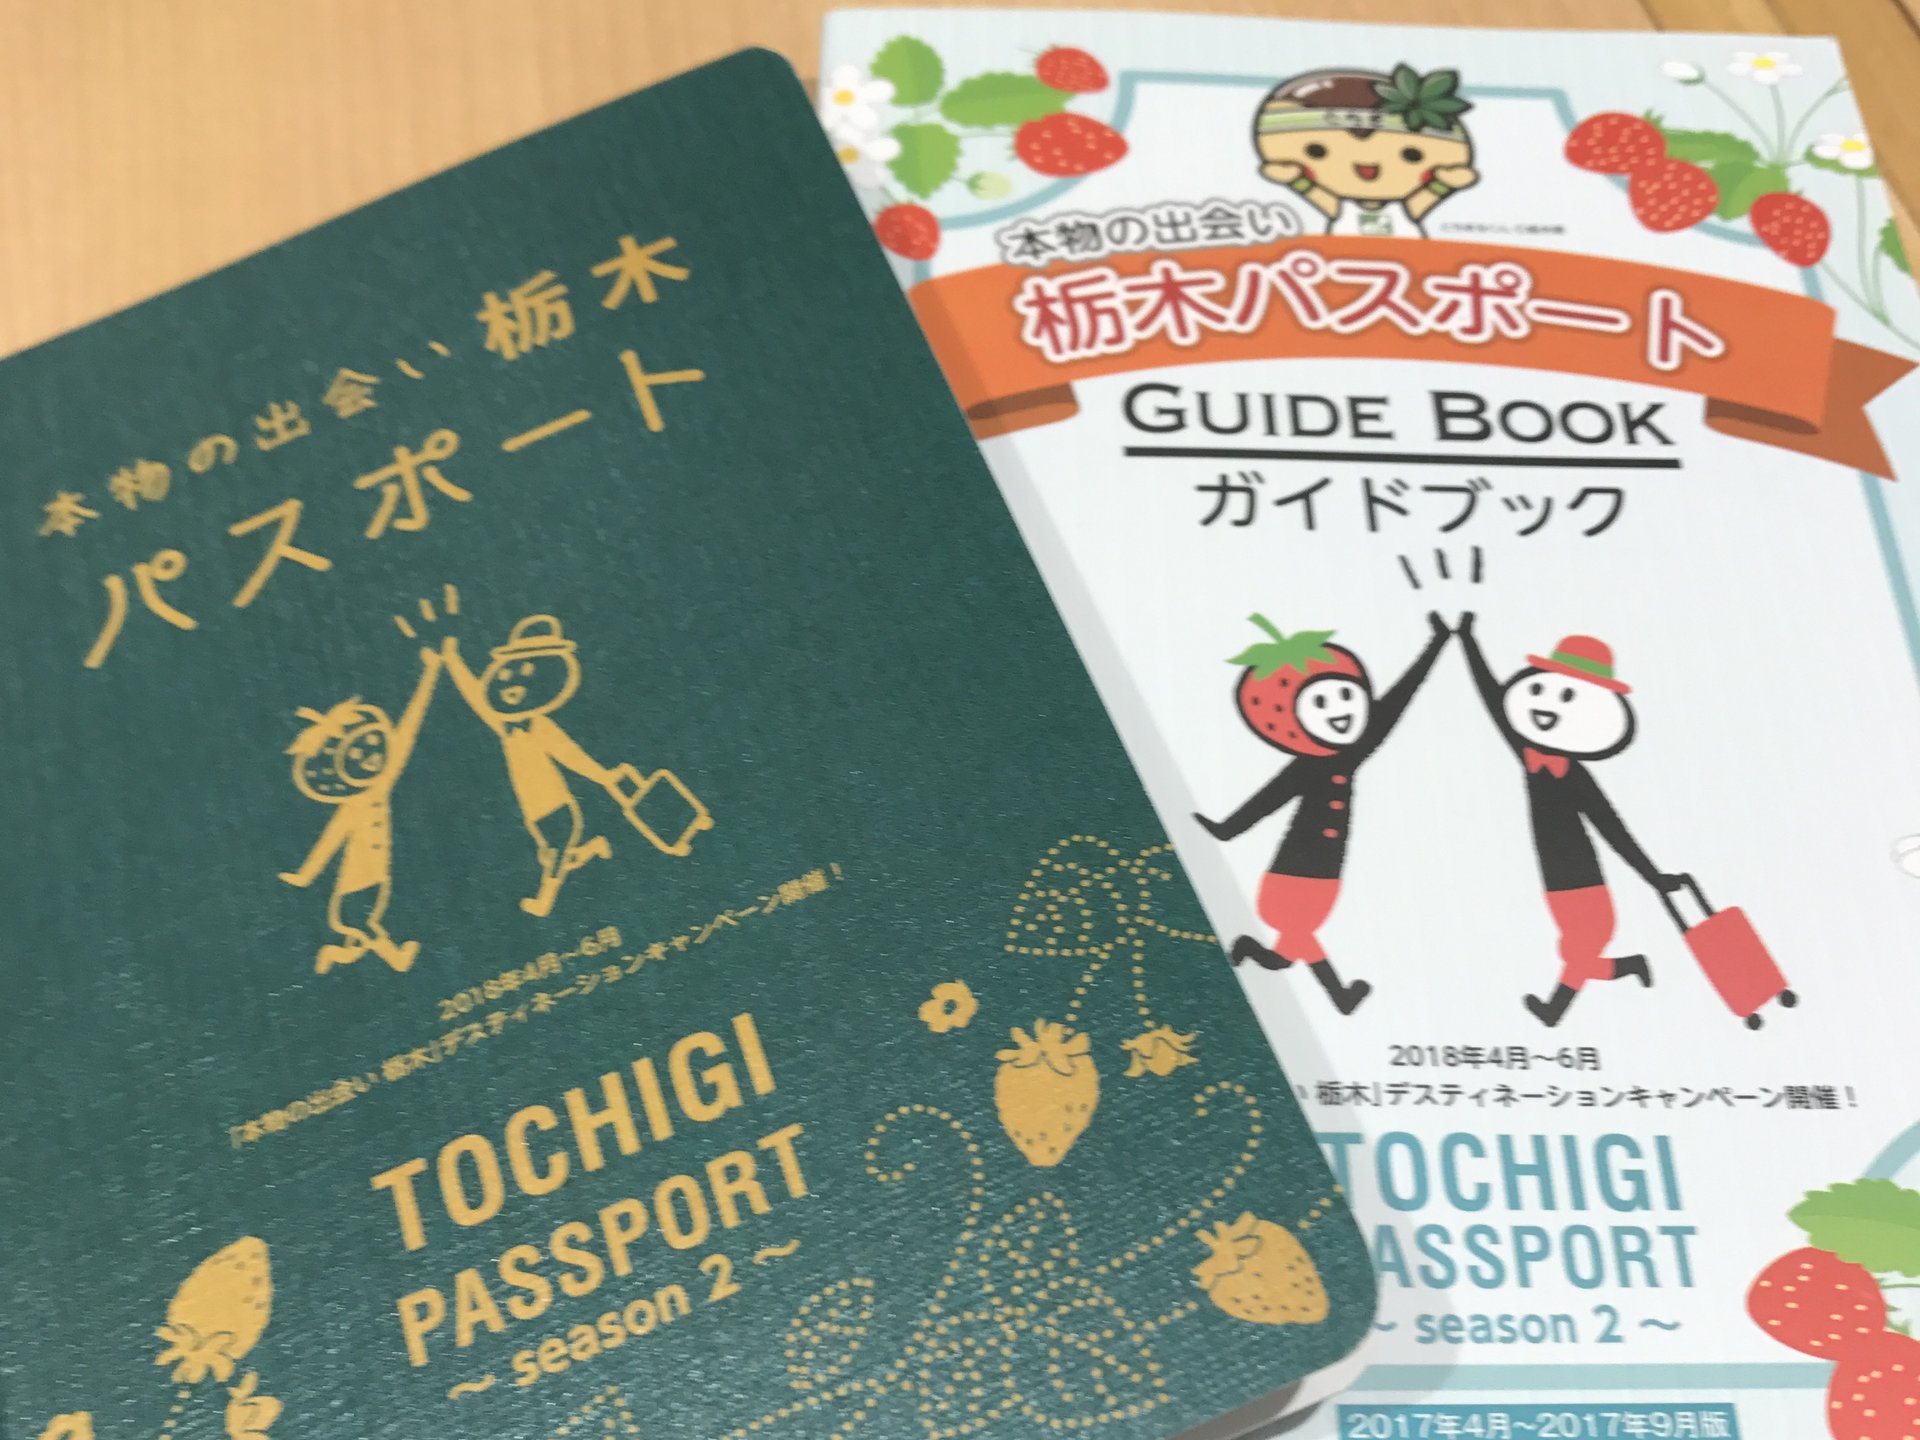 【栃木旅】大谷資料館から湯西川温泉へ♪暑い夏を涼しく過ごす旅♡栃木パスポートをGETしよう！